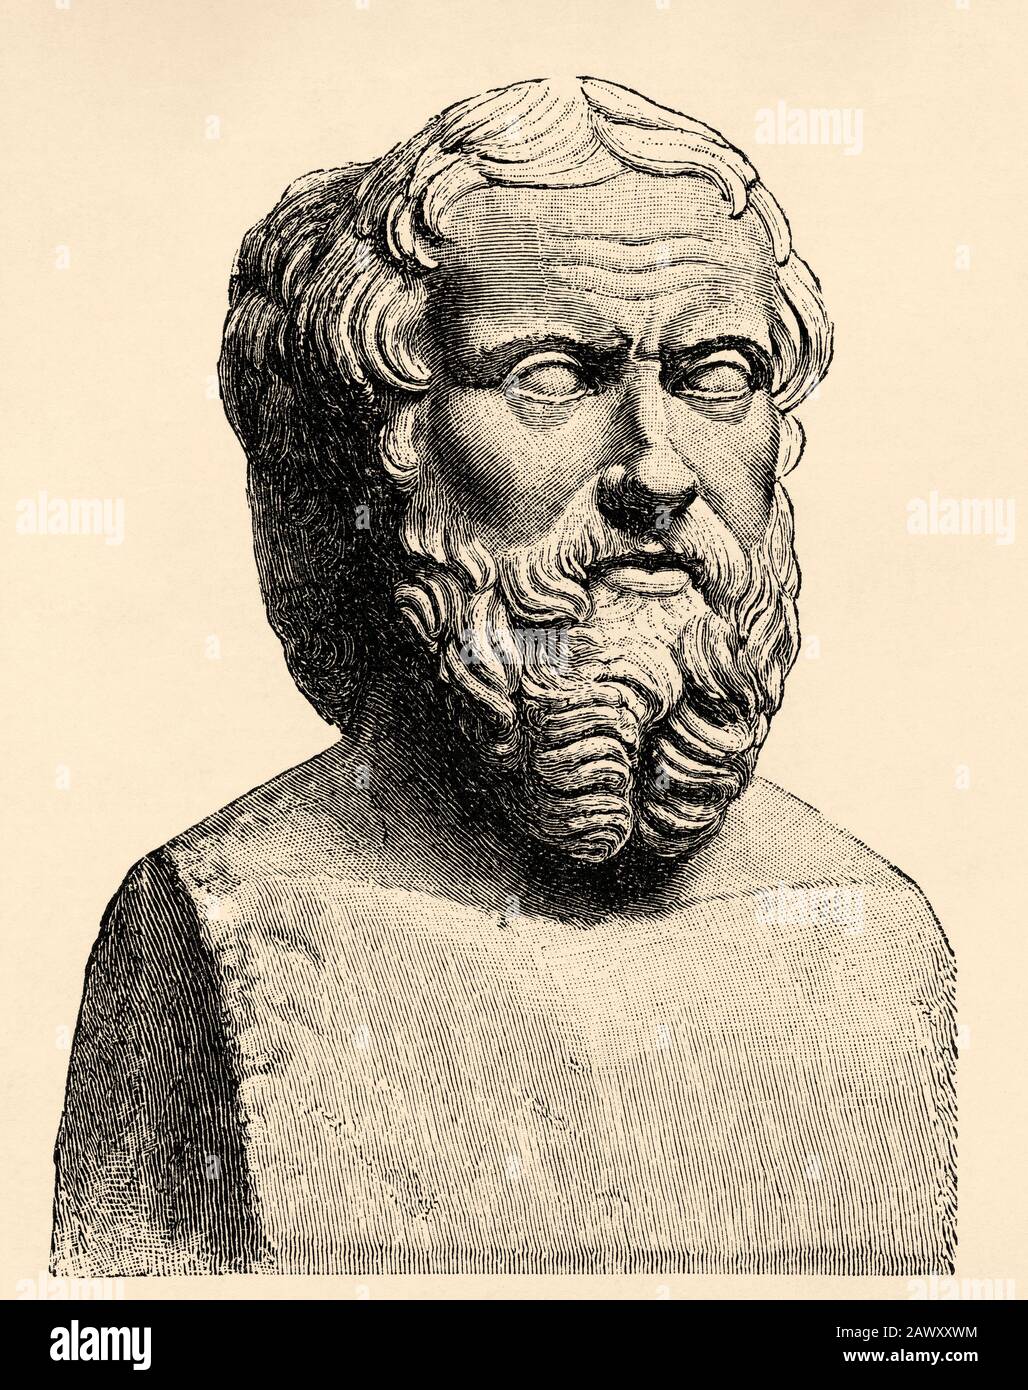 Herodot von Halicarnassus, war ein griechischer Historiker und Geograph, der zwischen 484 und 425 a lebte. C., traditionell als Vater der Geschichte i angesehen Stockfoto